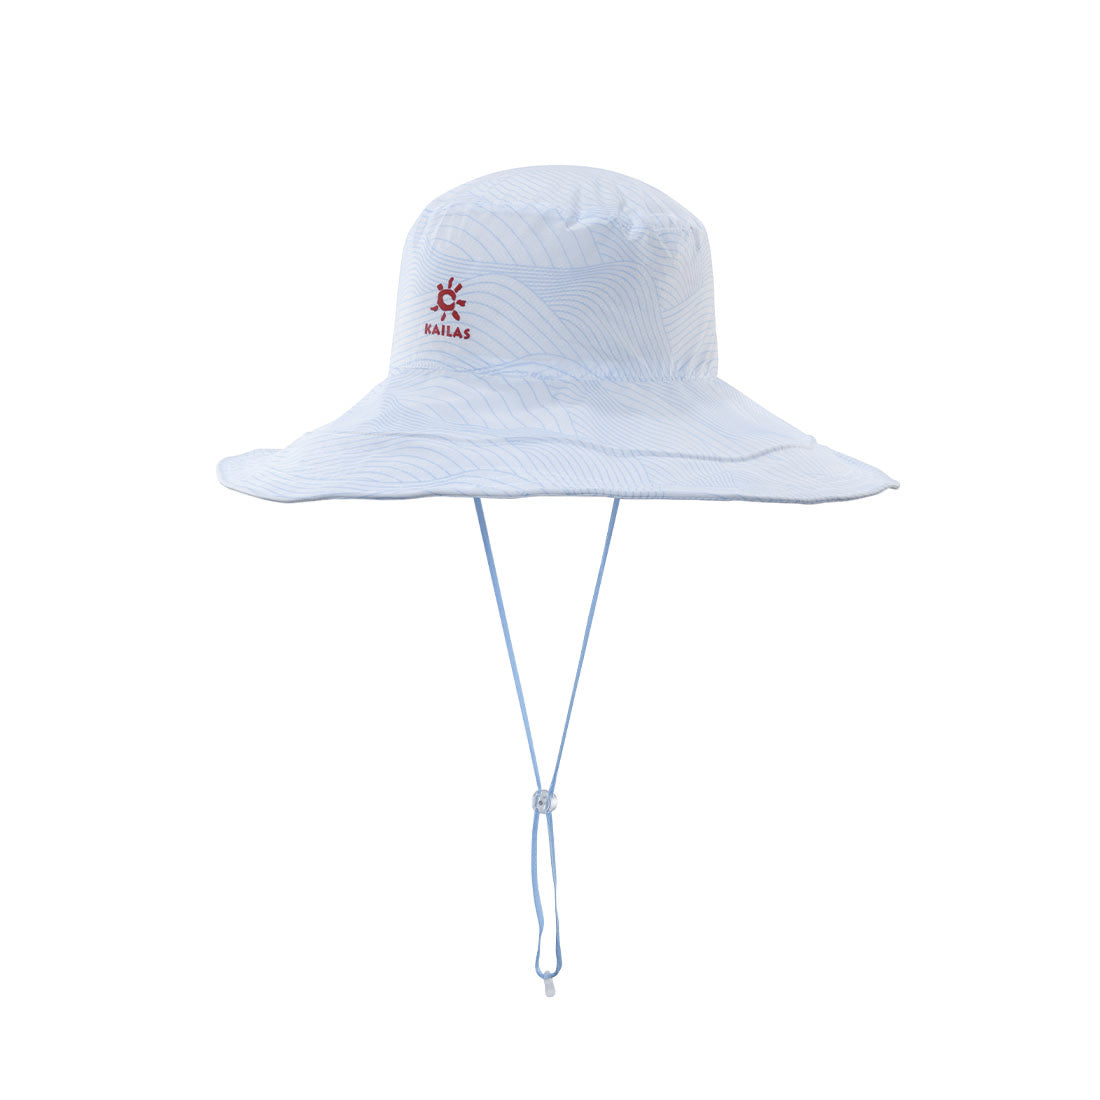 Kailas Extra-Wide Brim Lightweight Hat, White